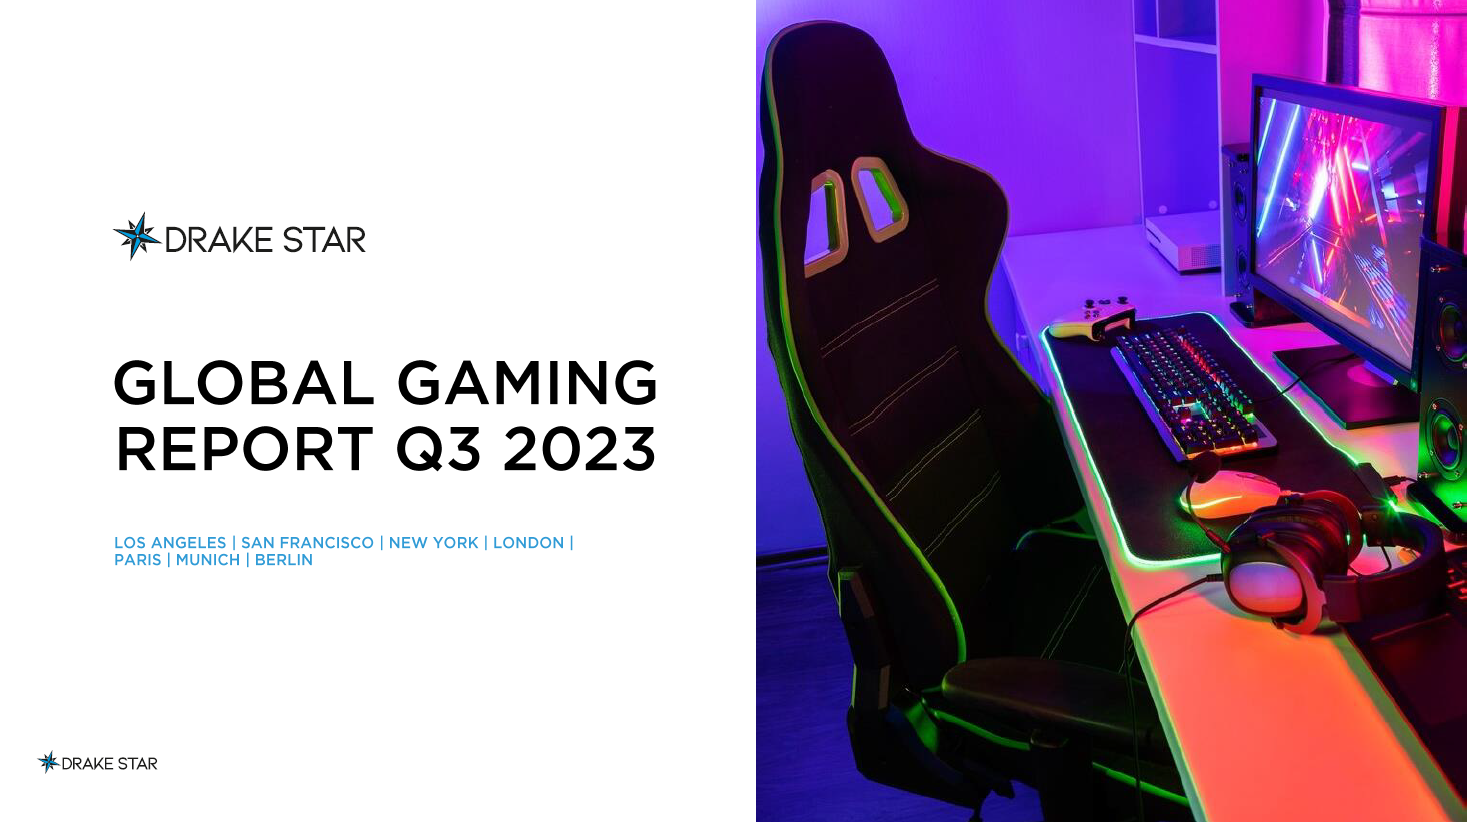 Global Gaming Report Q3 2023 